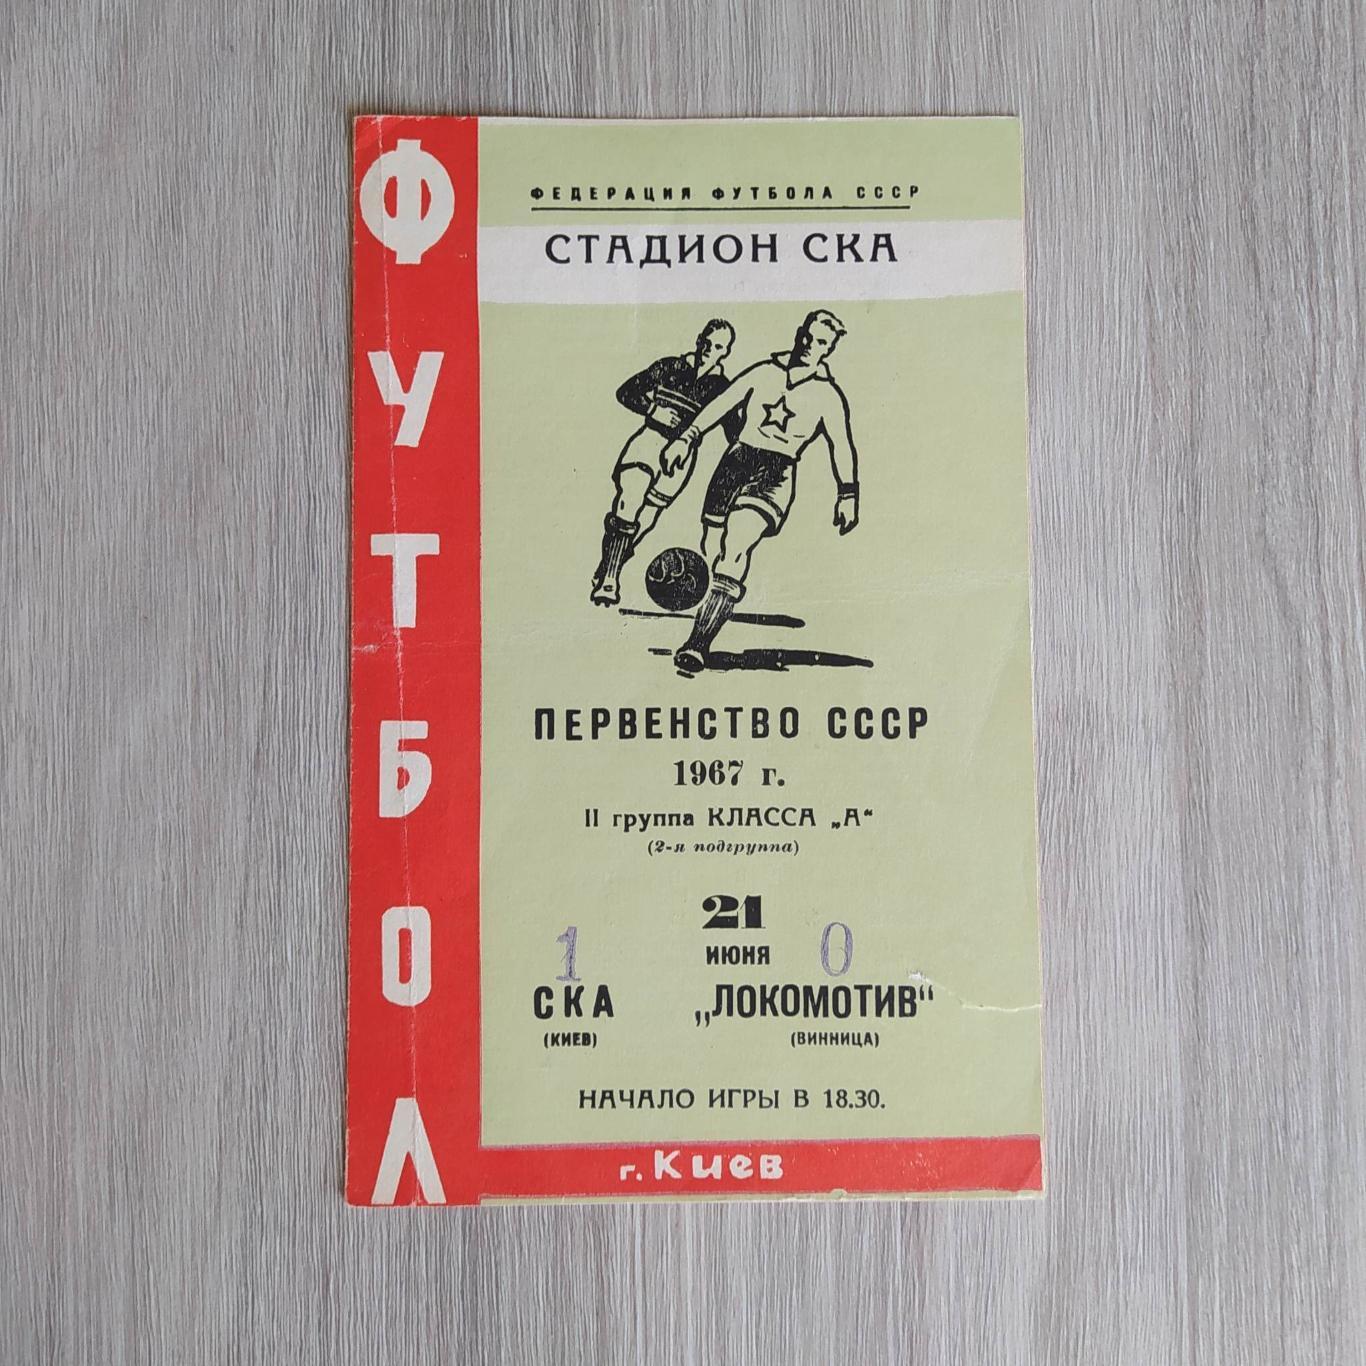 СКА Киев – Локомотив Винница 21.06.1967